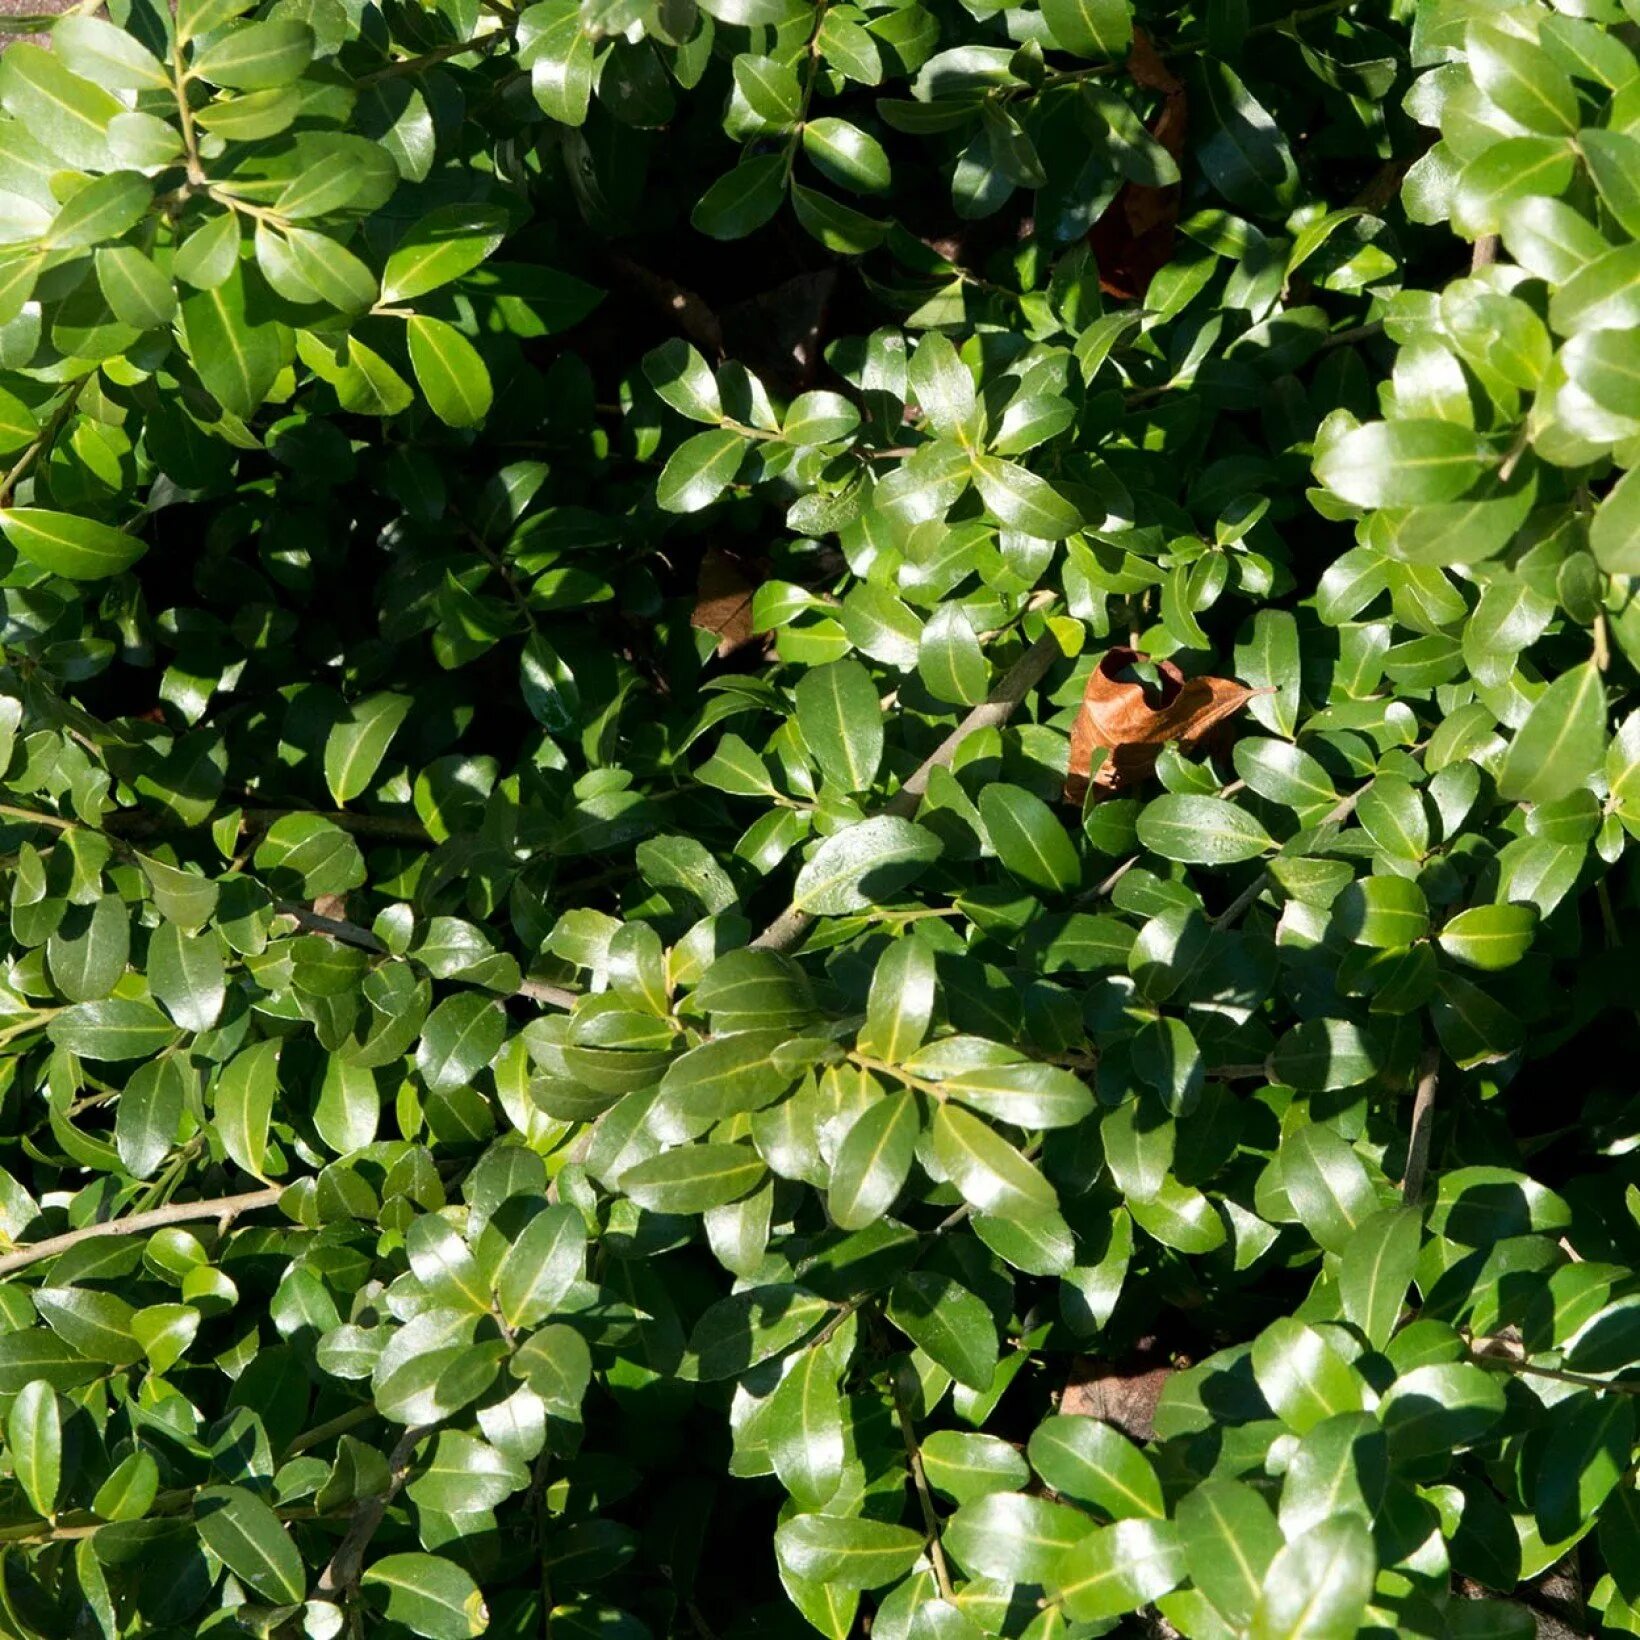 Вечнозеленые листопадные растения. Падуб crenata. Падуб городчатый Грин хедж. Падуб городчатый 'Green Hedge'.